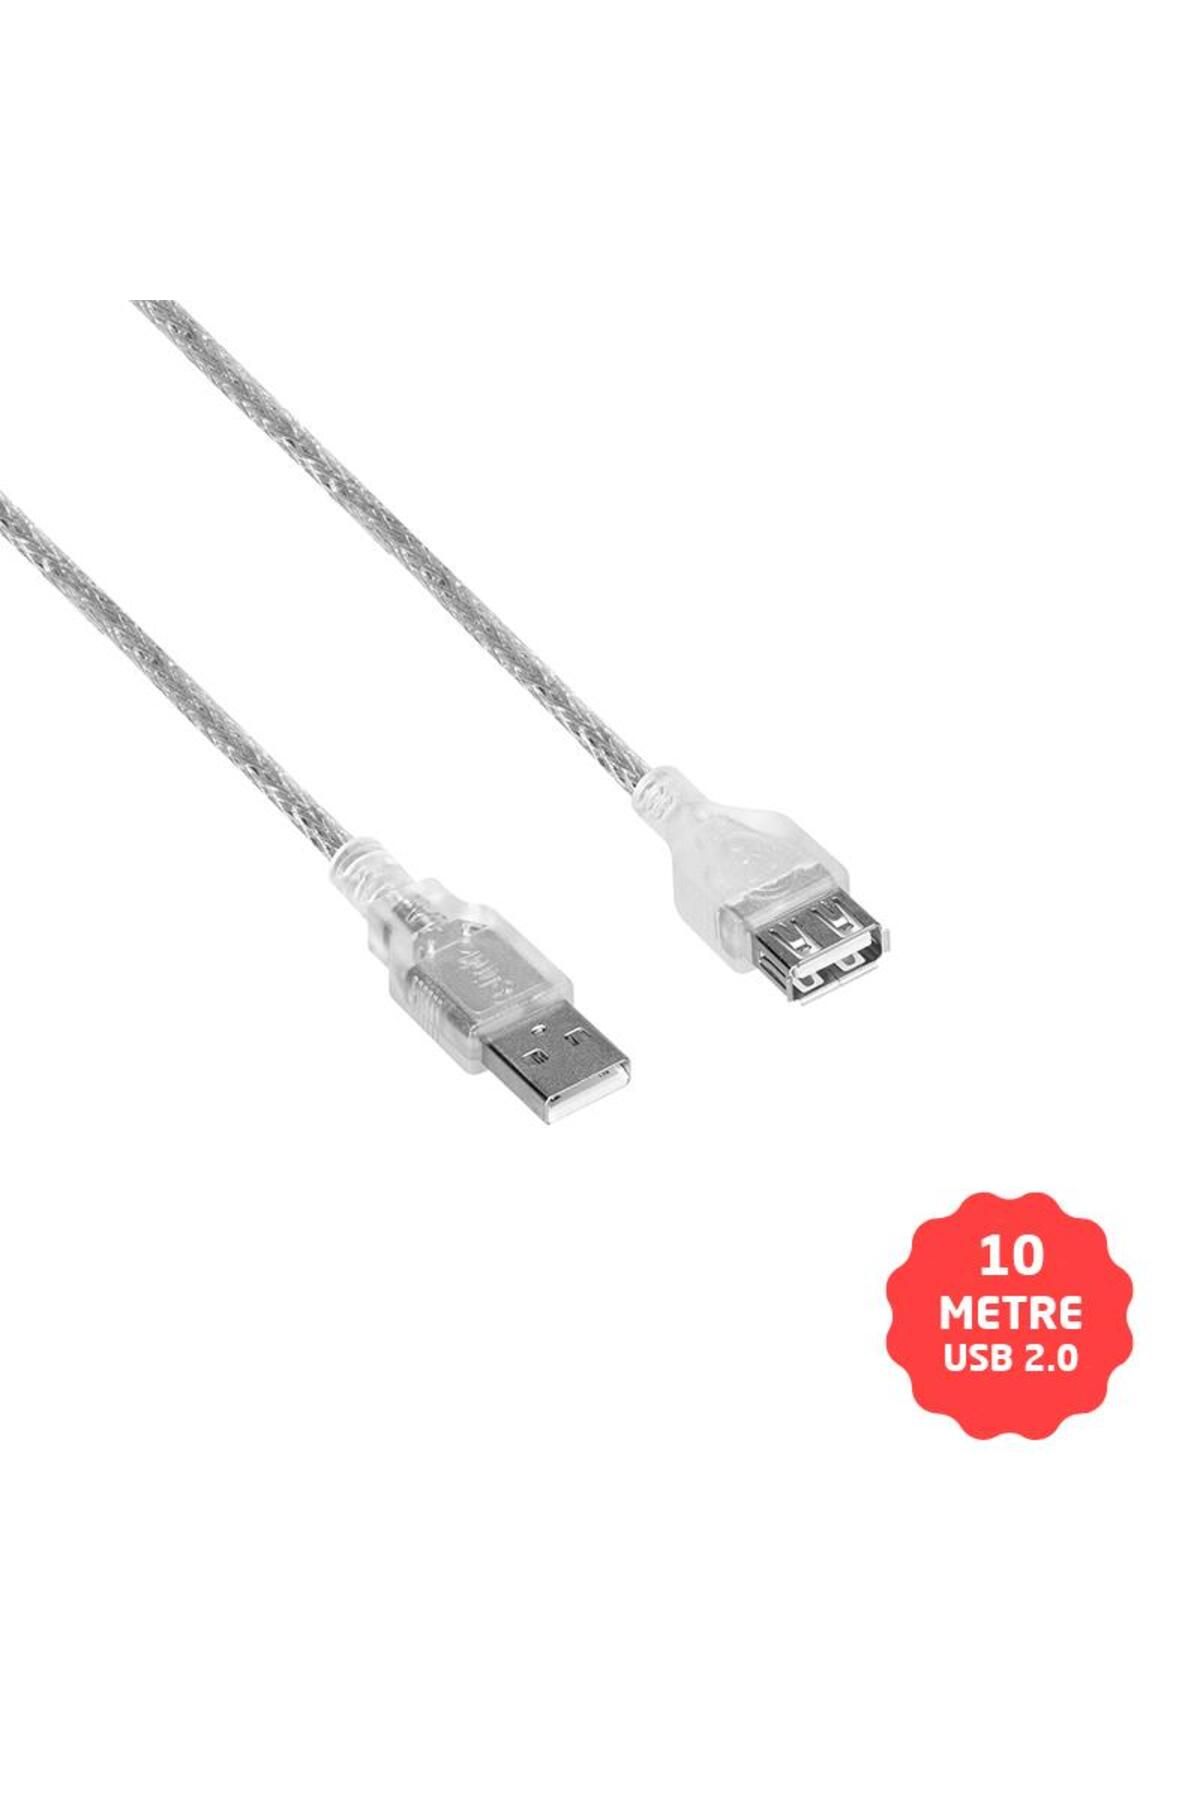 S-Link USB Uzatma Kablo 10 Metre